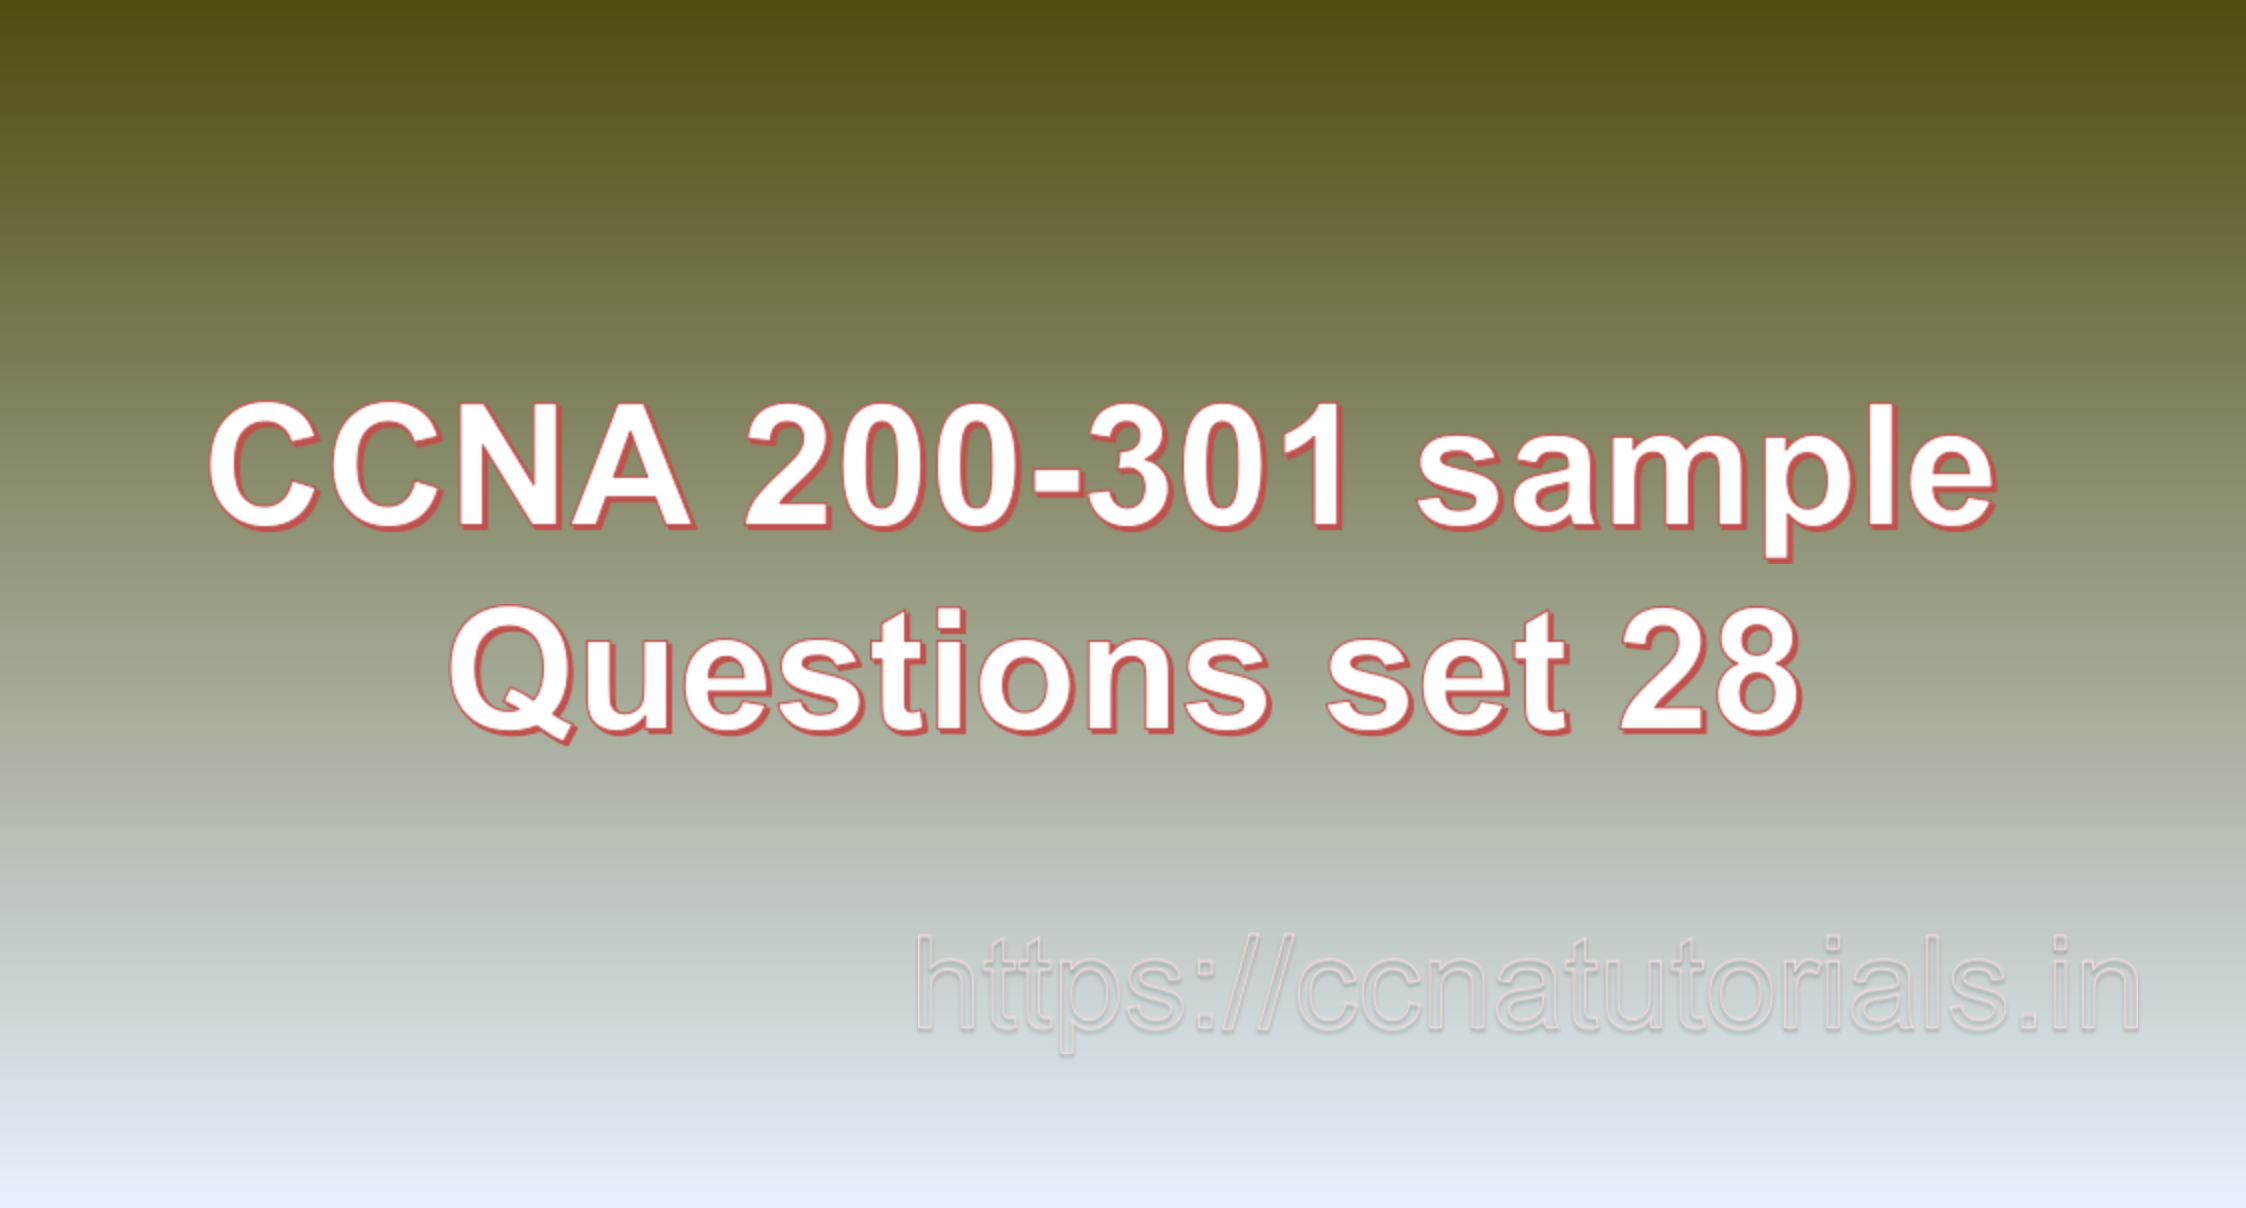 ccna sample questions set 28, ccna tutorials, CCNA Exam, ccna